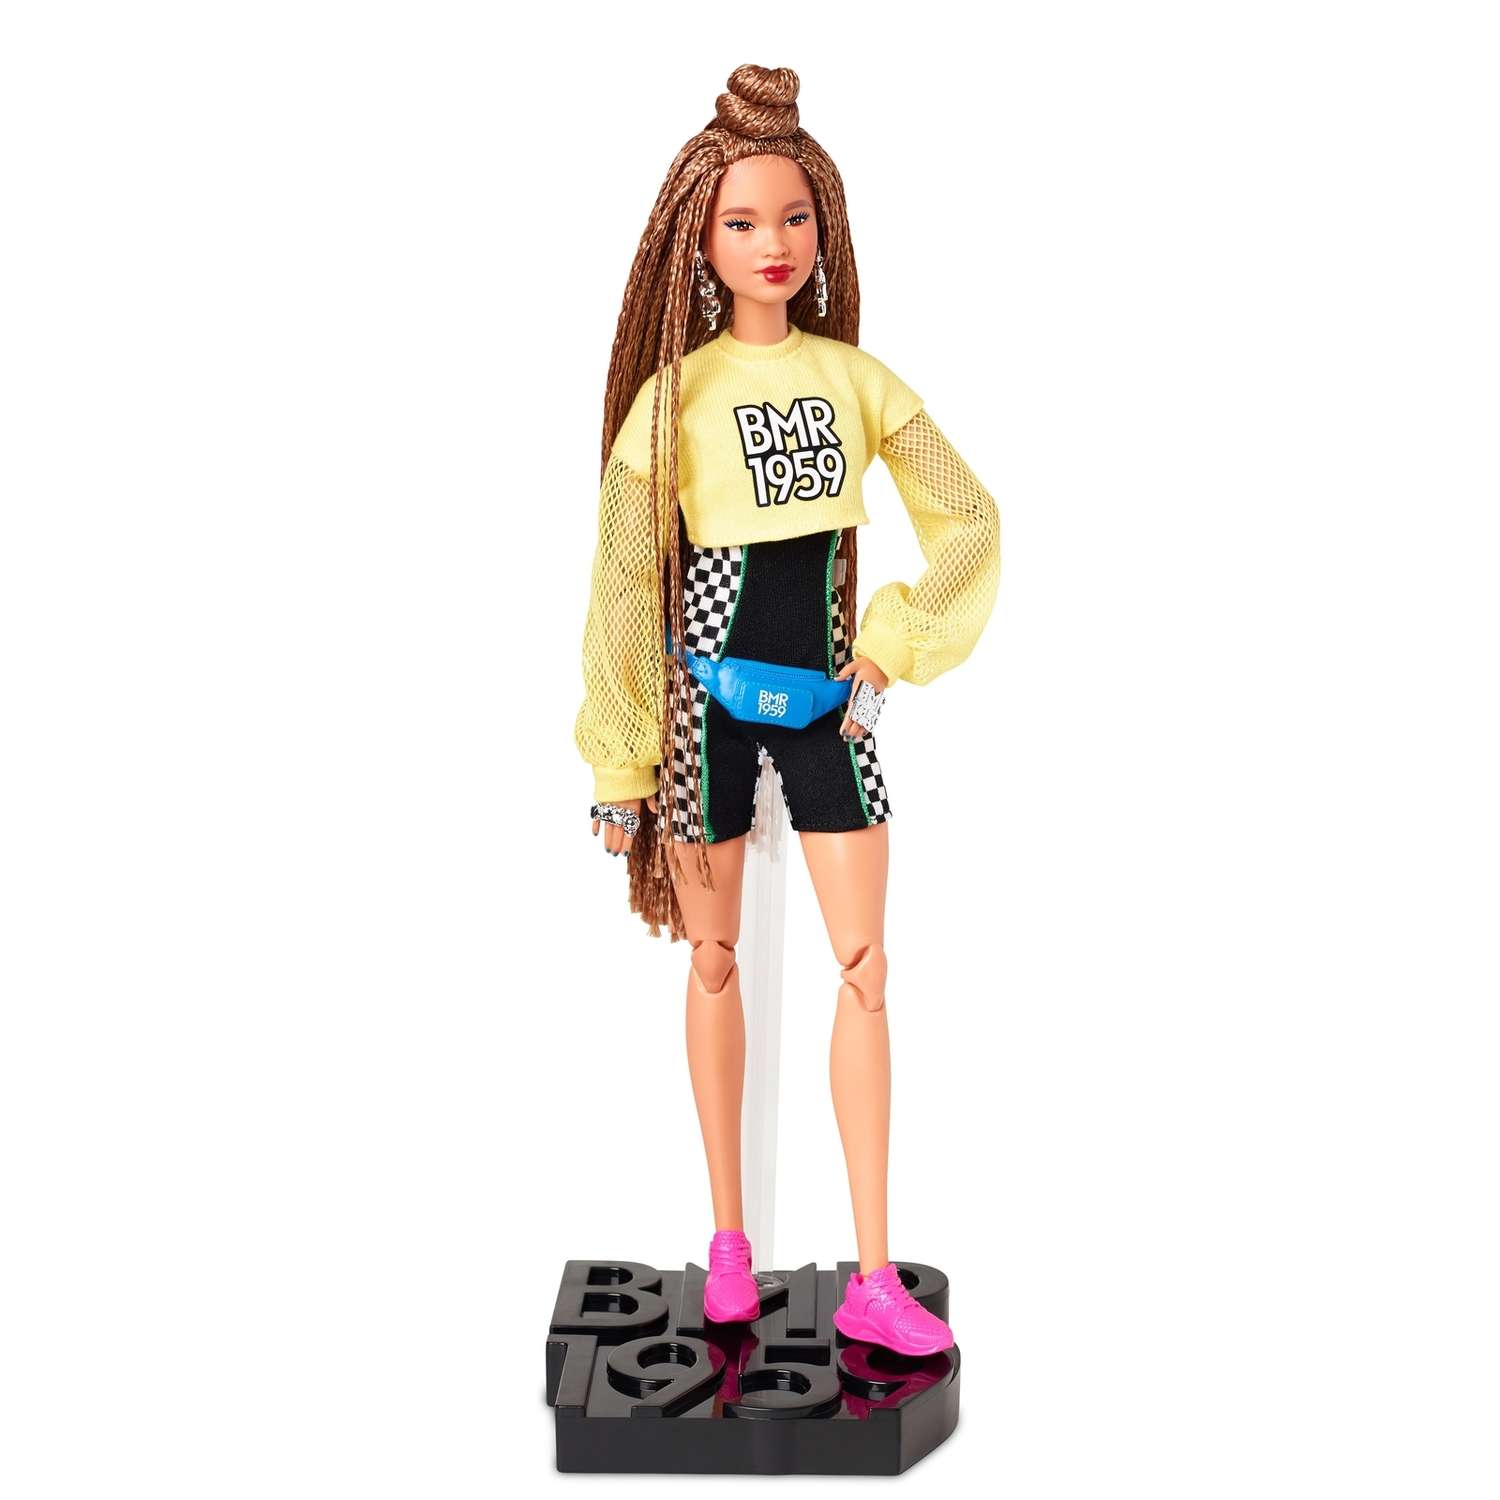 Кукла Barbie коллекционная BMR1959 GHT91 GHT91 - фото 1